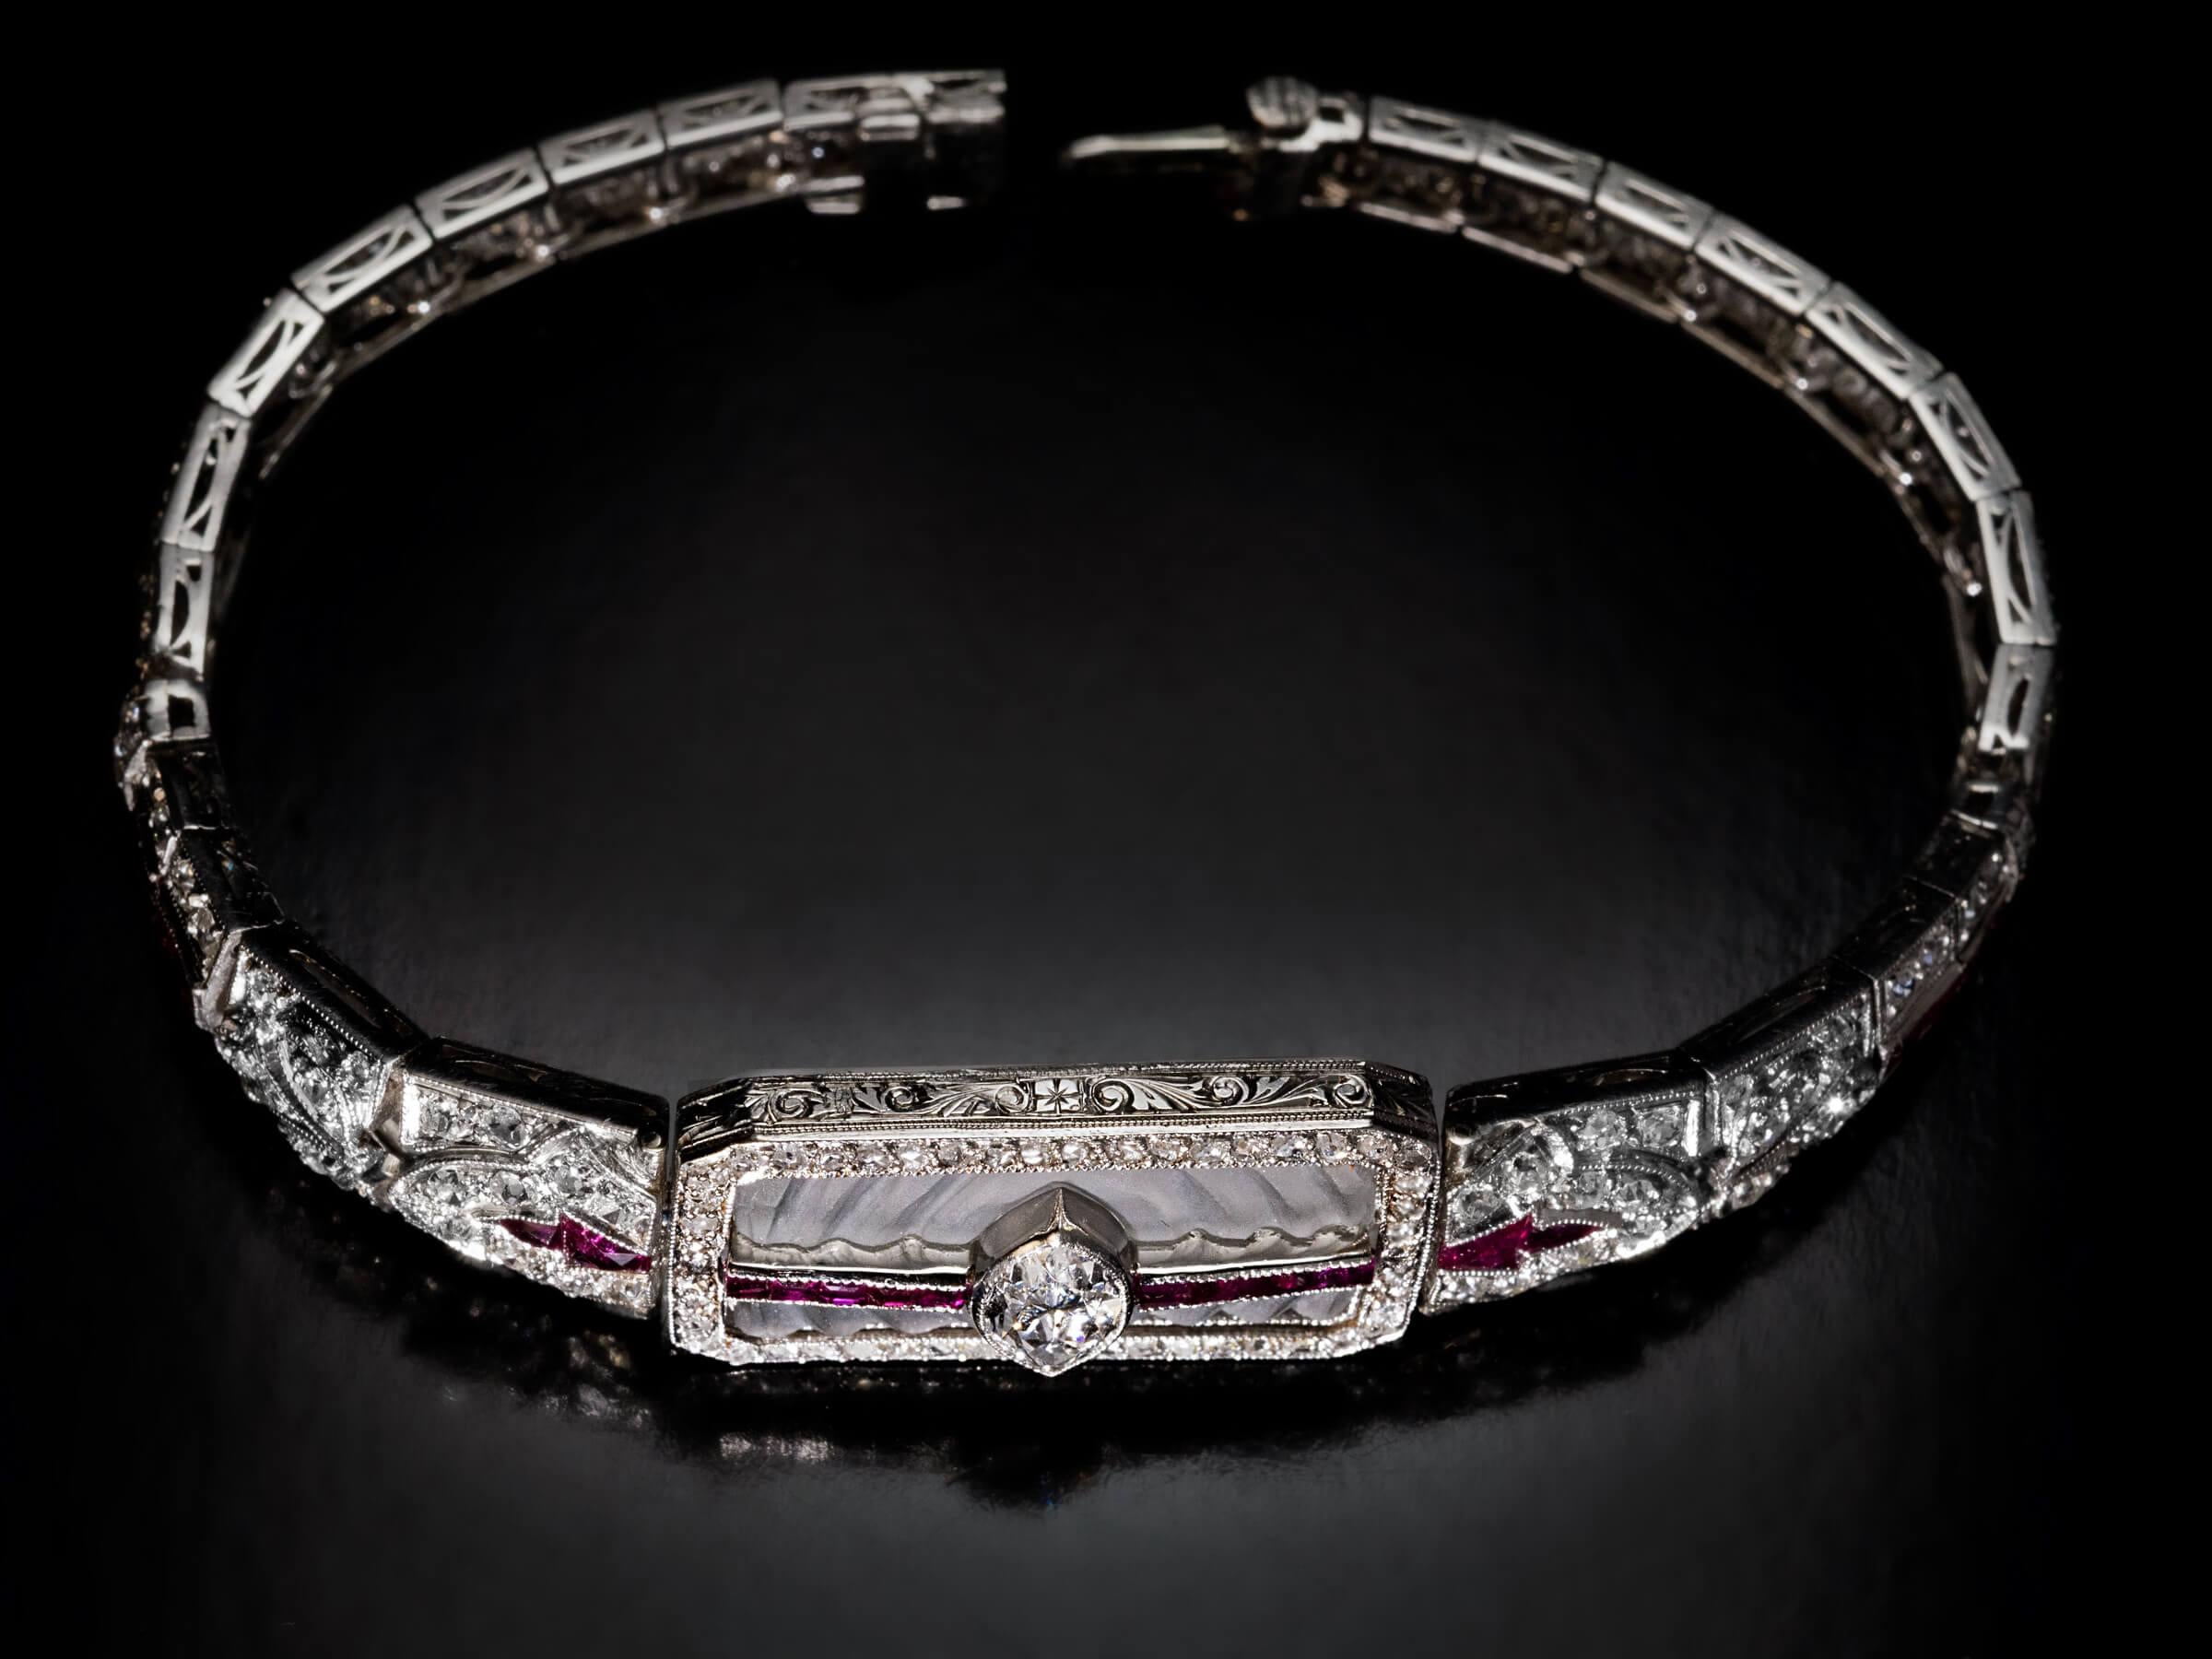 Circa 1910s  Ce bracelet antique du début de l'époque Art Déco est finement réalisé à la main en platine. Le bracelet est centré sur une plaque de cristal de roche dépoli, sculptée pour imiter les ondulations de l'eau. Un diamant de taille marquise